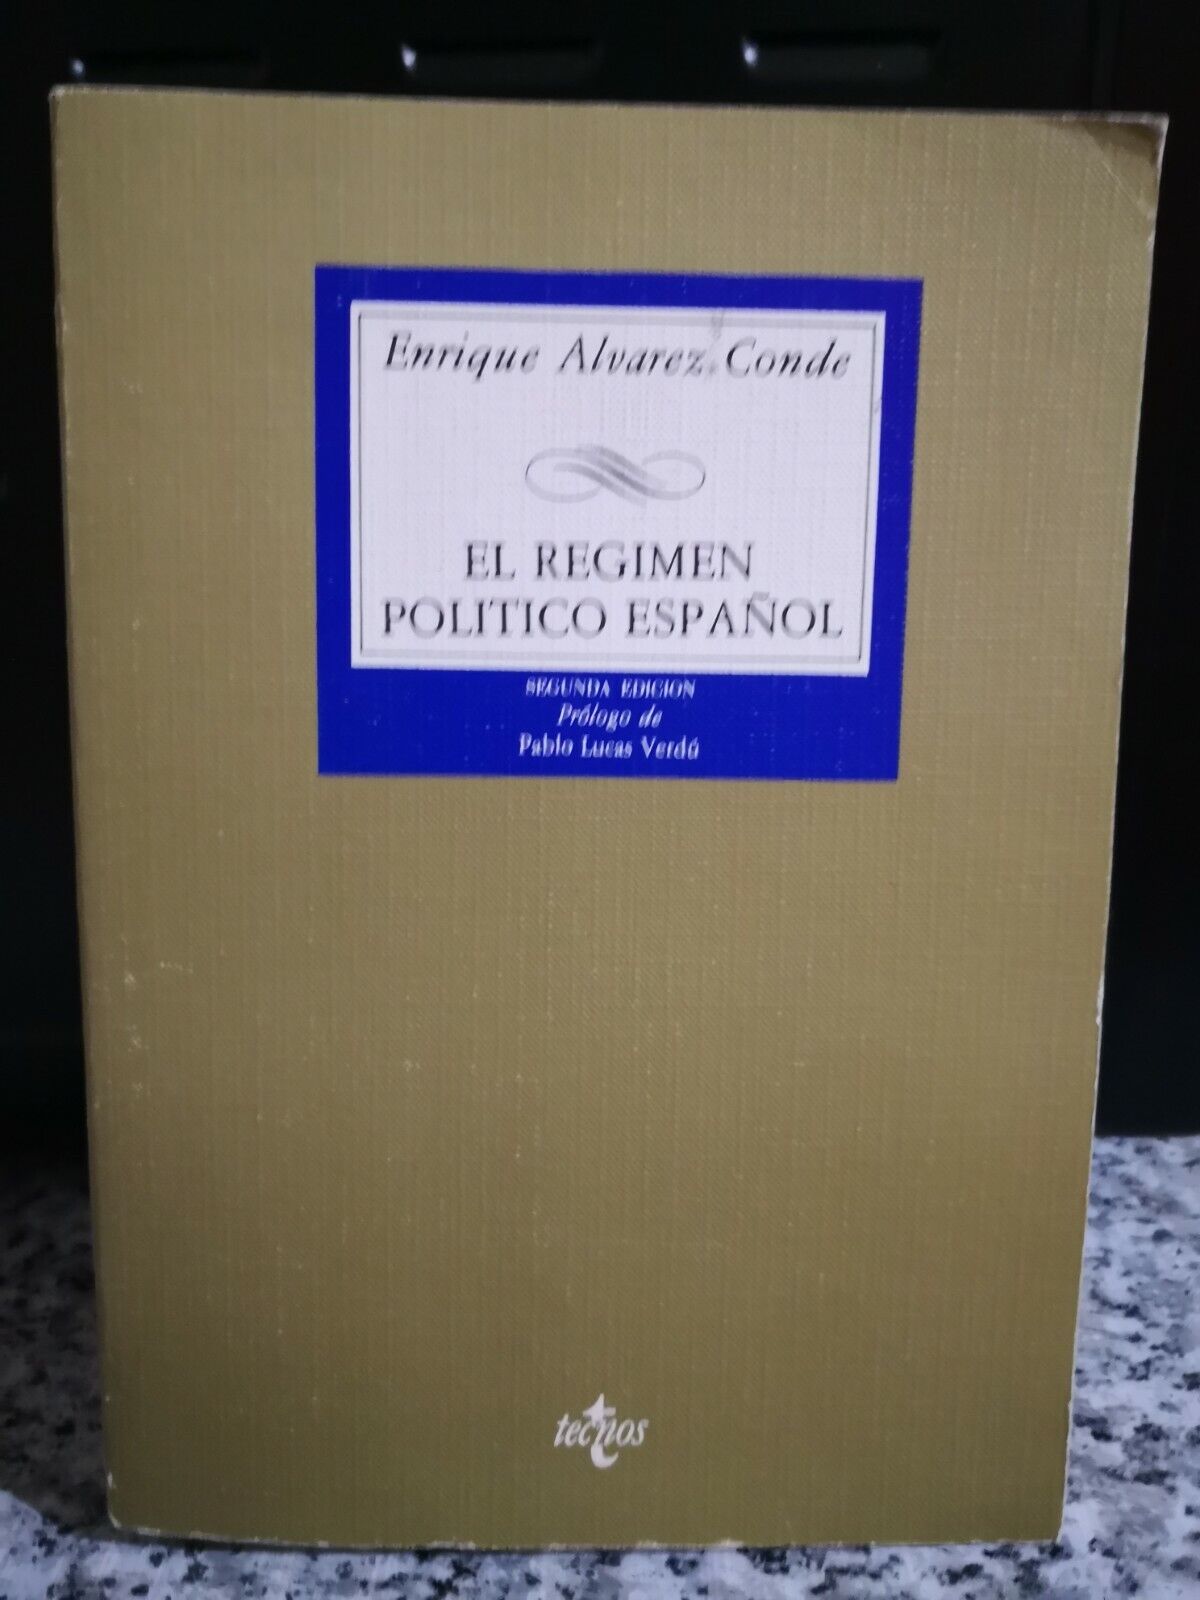 El Regimen politico Espanol 2? ediction  di Enrique Alvarez Conde,1985,Tecnos -F